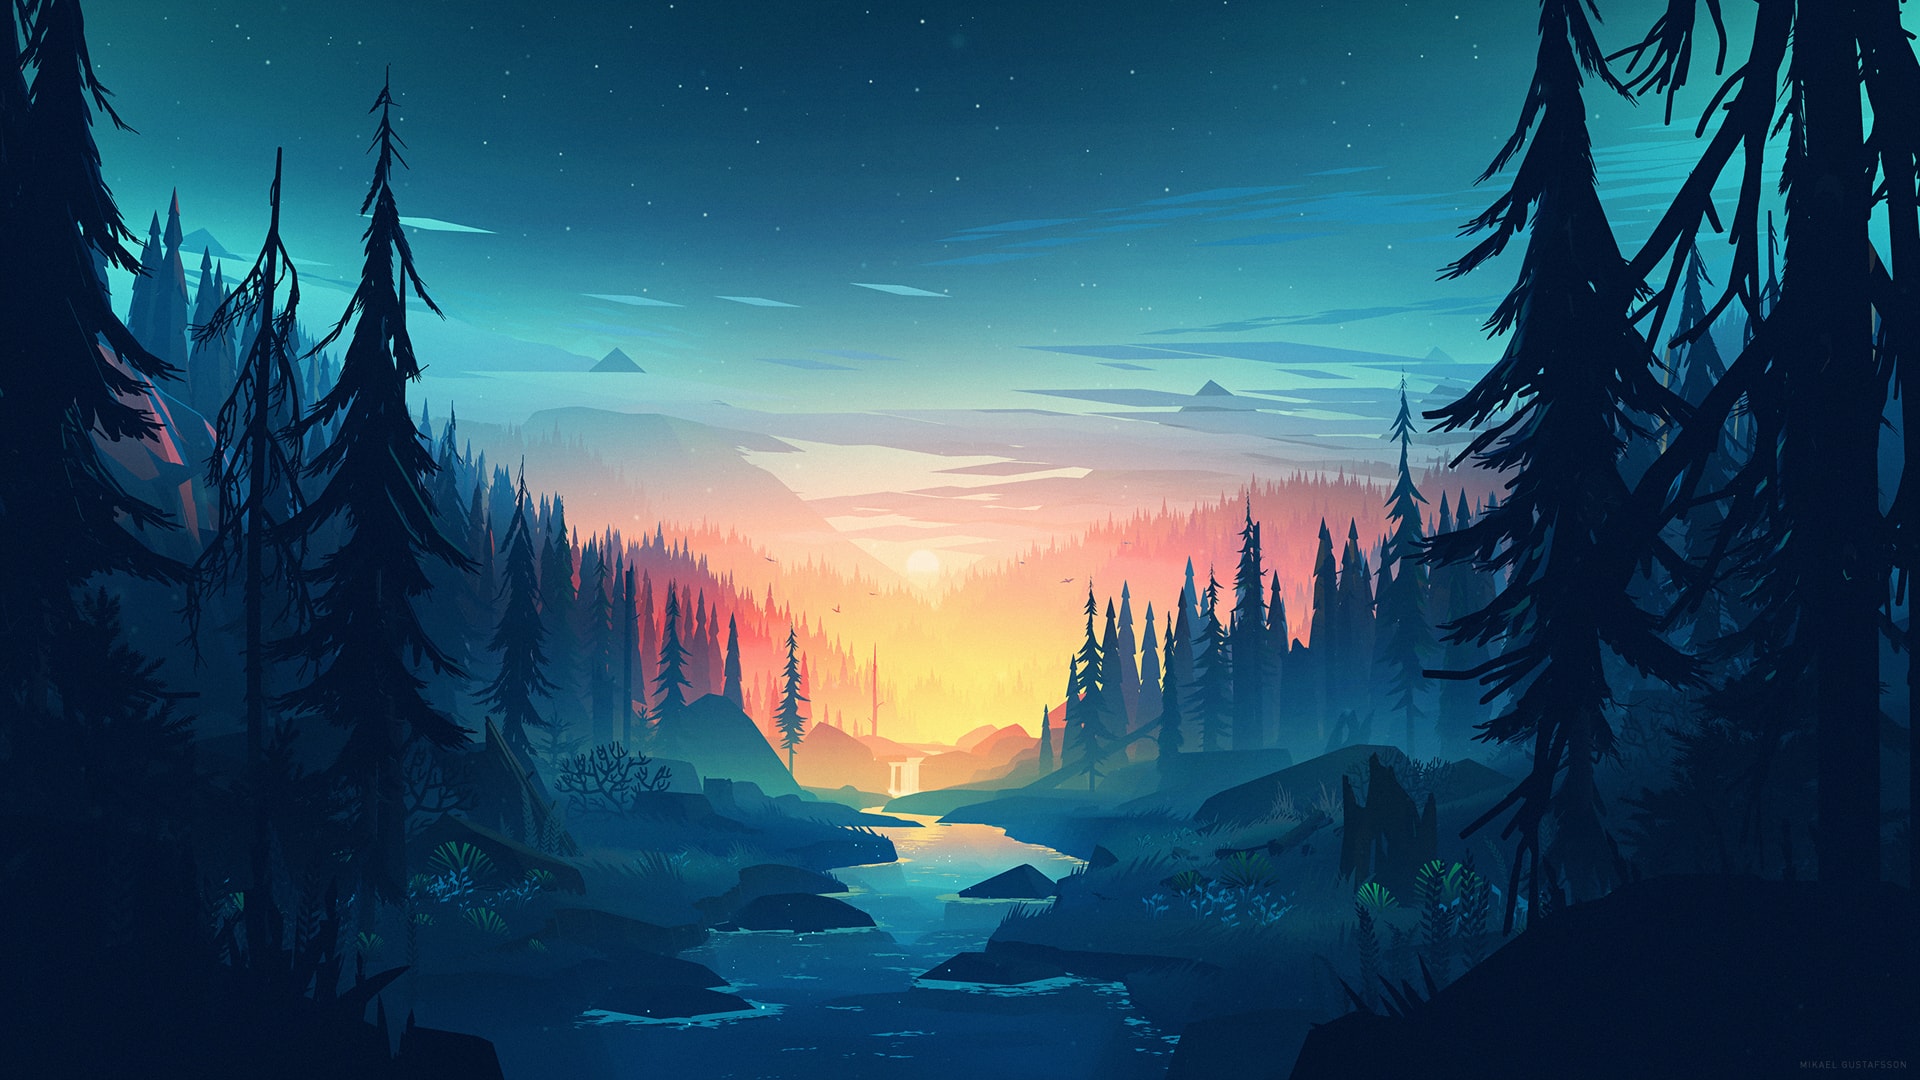 唯美夜空群山之中森林湖泊静寂唯美风景